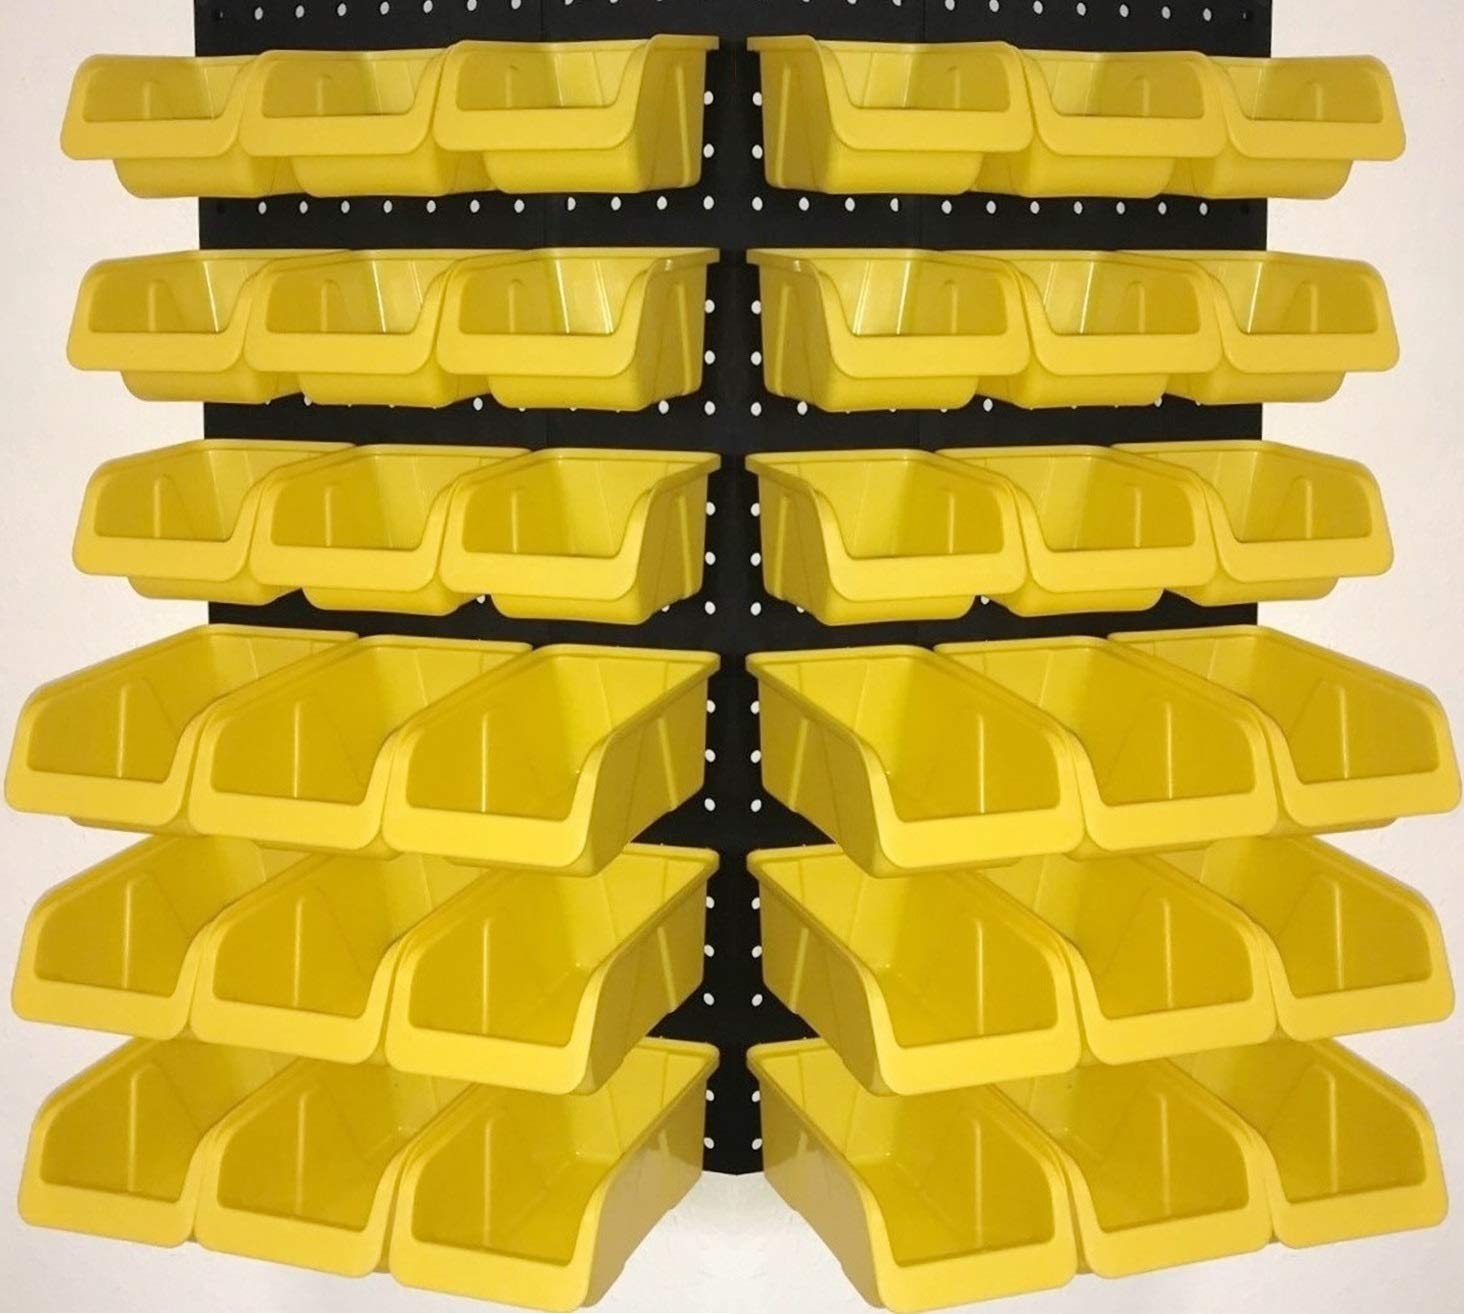 8 each Black Pegboard Bins for Parts Storage Workbench Peg Boa WallPeg Bin Kit 